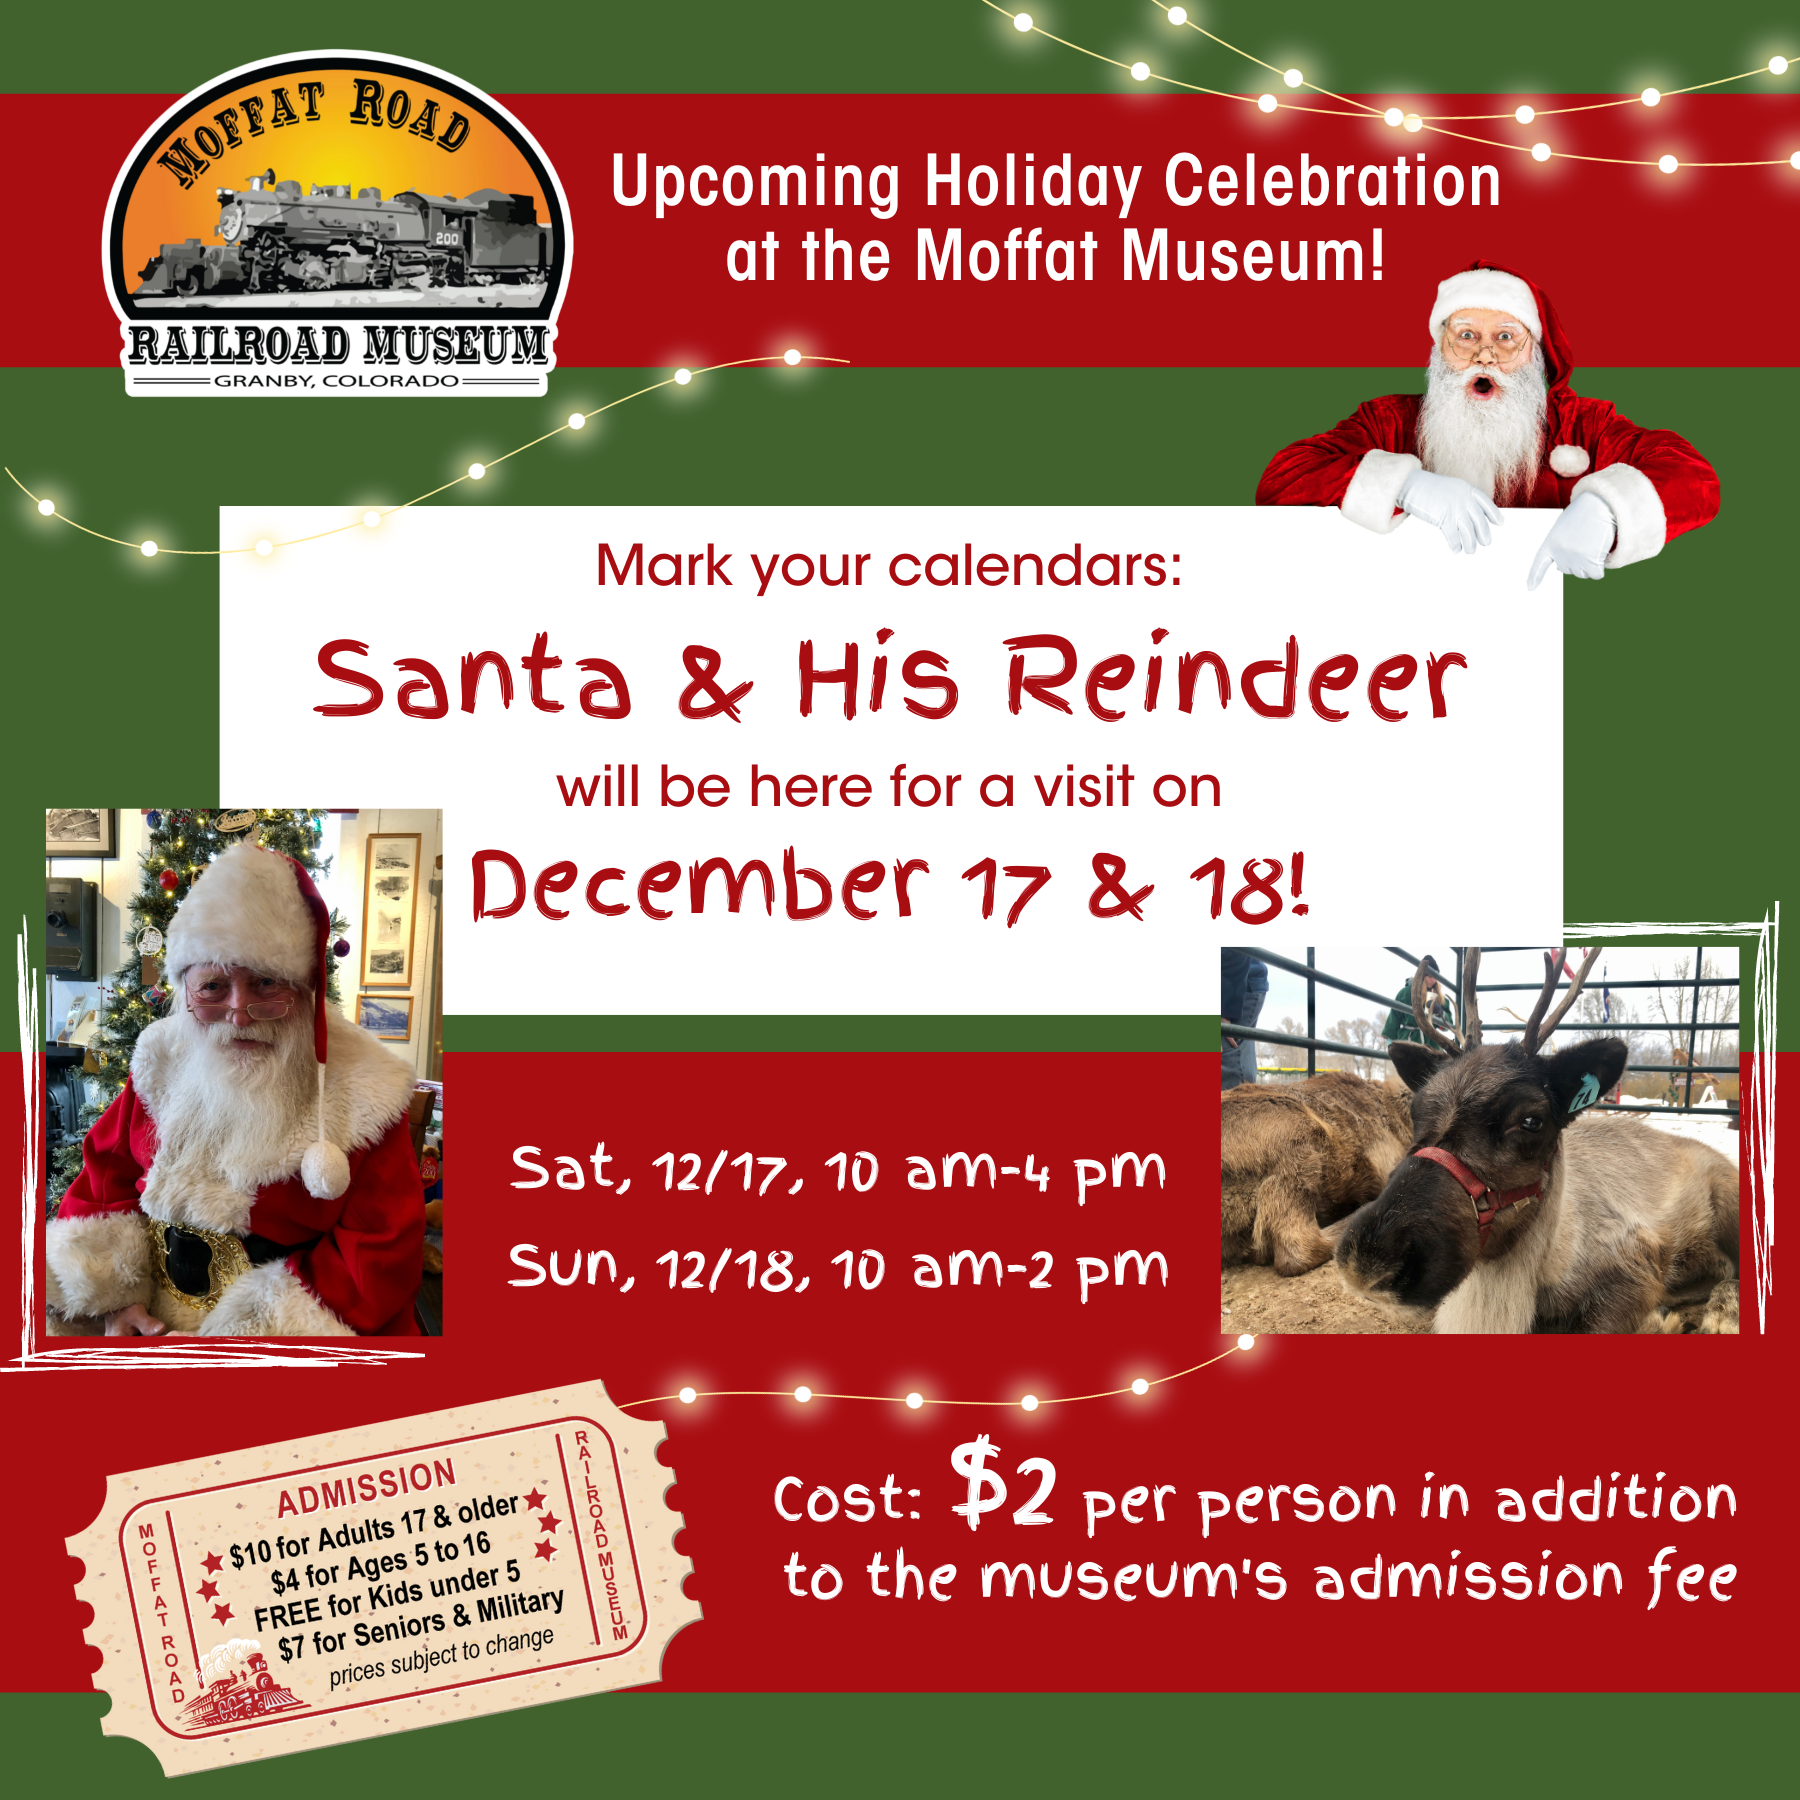 Santa & Reindeer Event on December 17 & 18, 2022